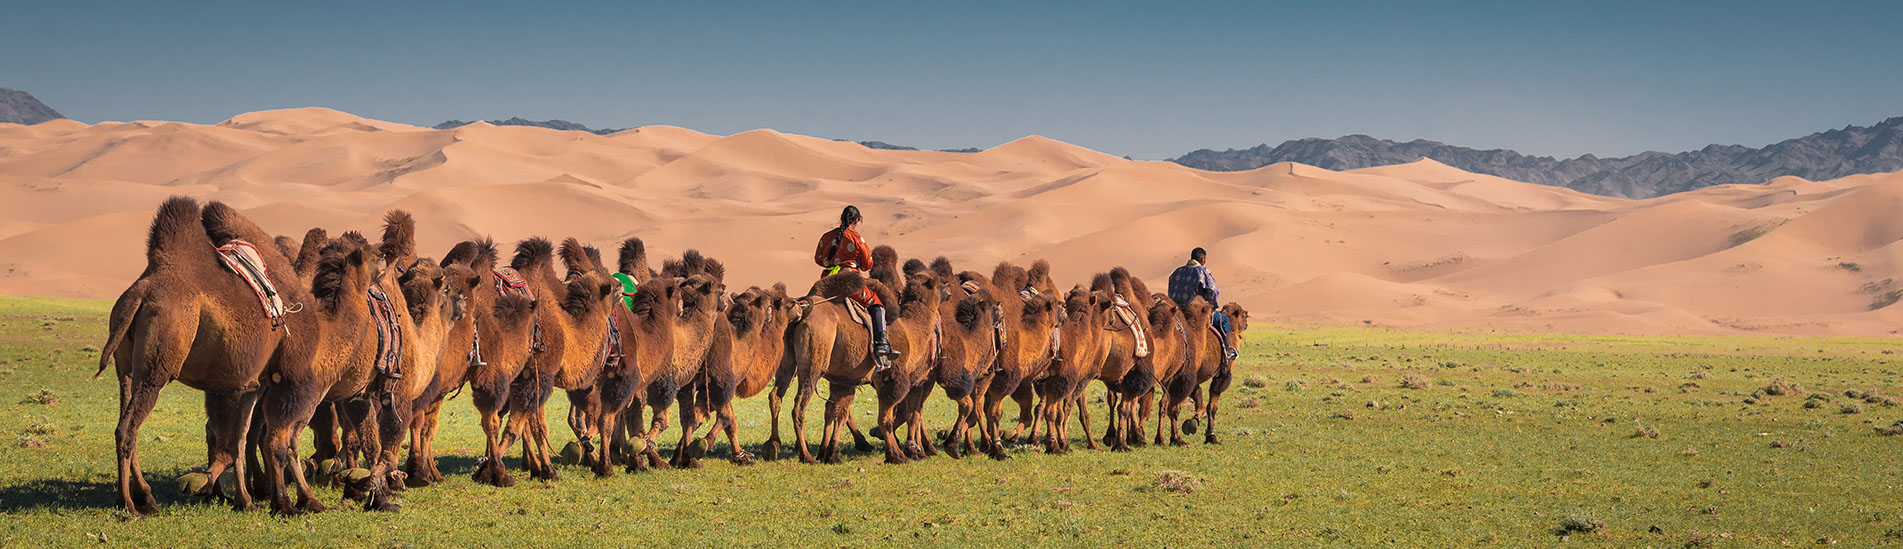 Camel riding in gobi desert, Mongolia